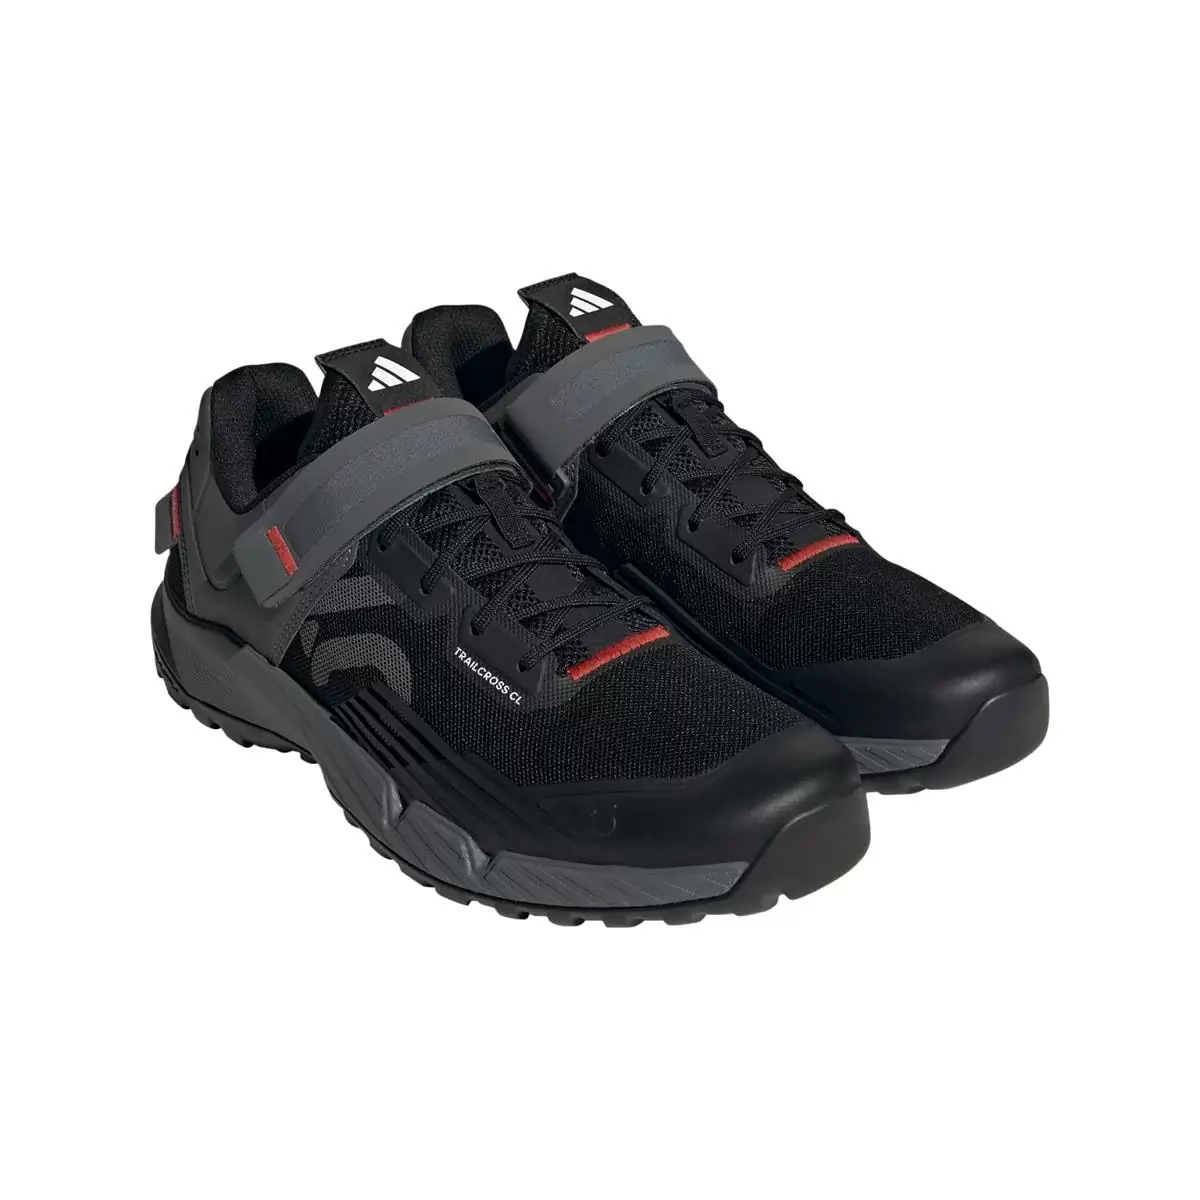 Clip 5.10 Trailcross MTB Shoes Black/Grey Size 43 #1